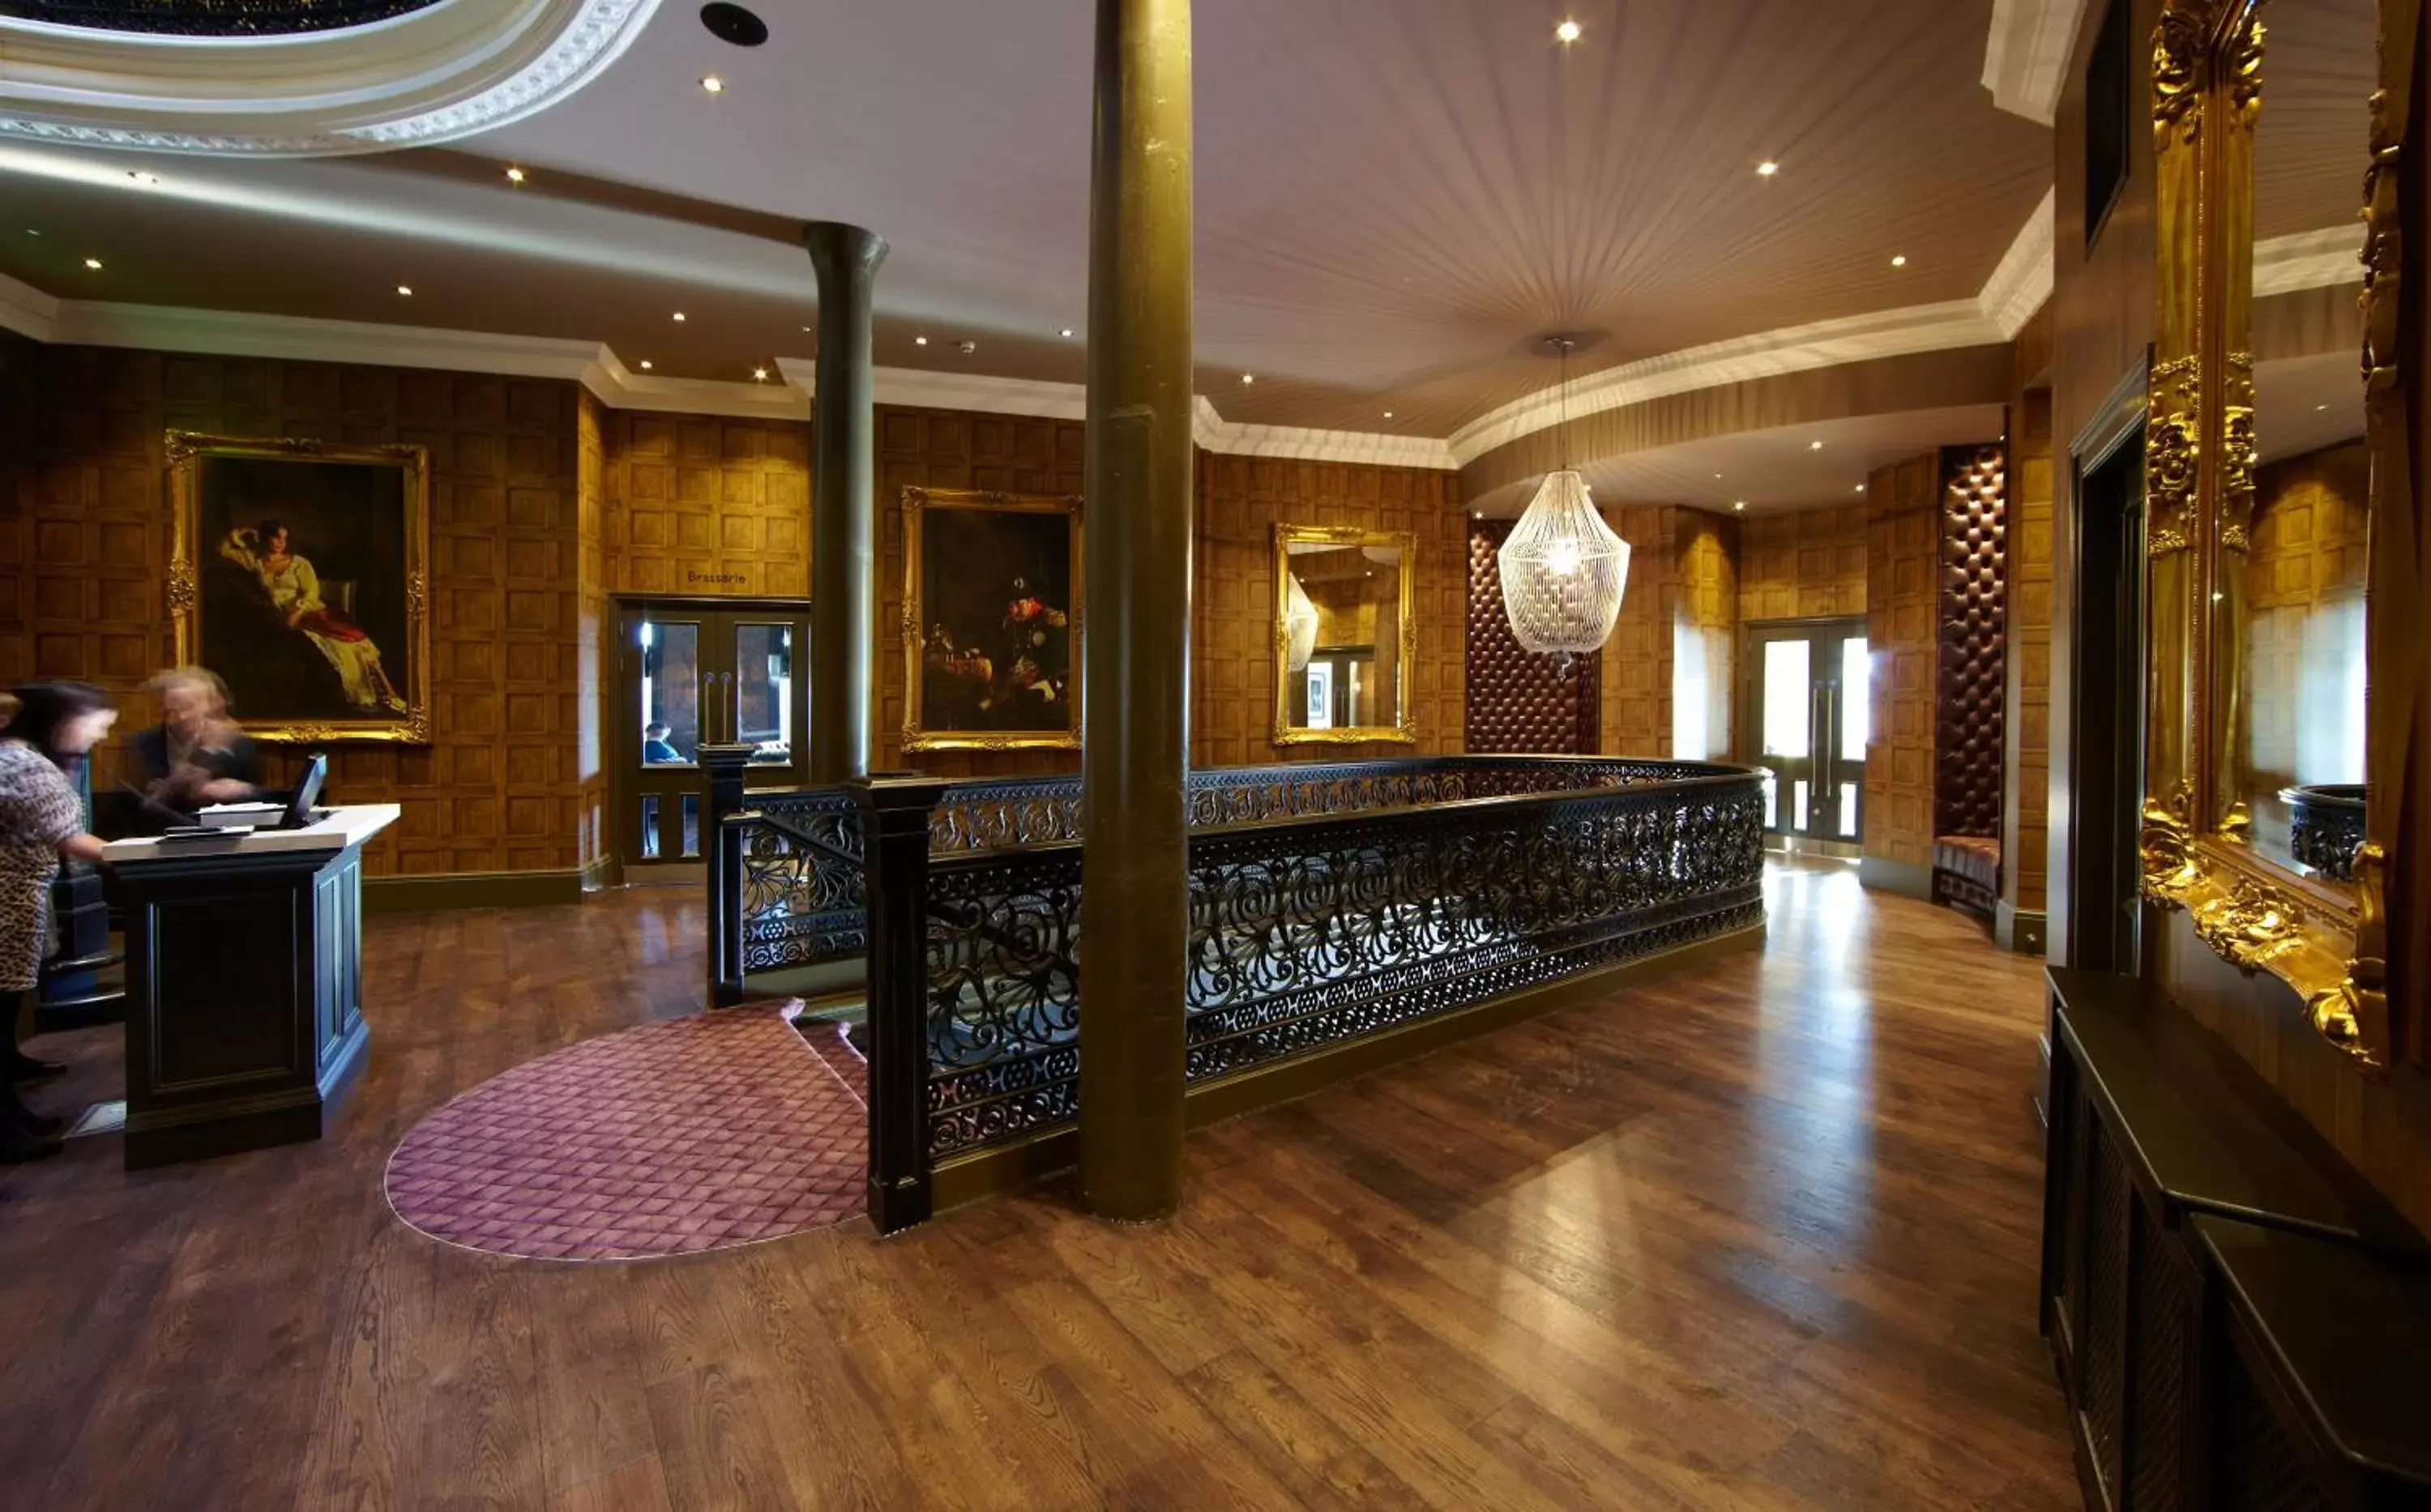 Lobby or reception, Lobby/Reception in Malmaison Dundee